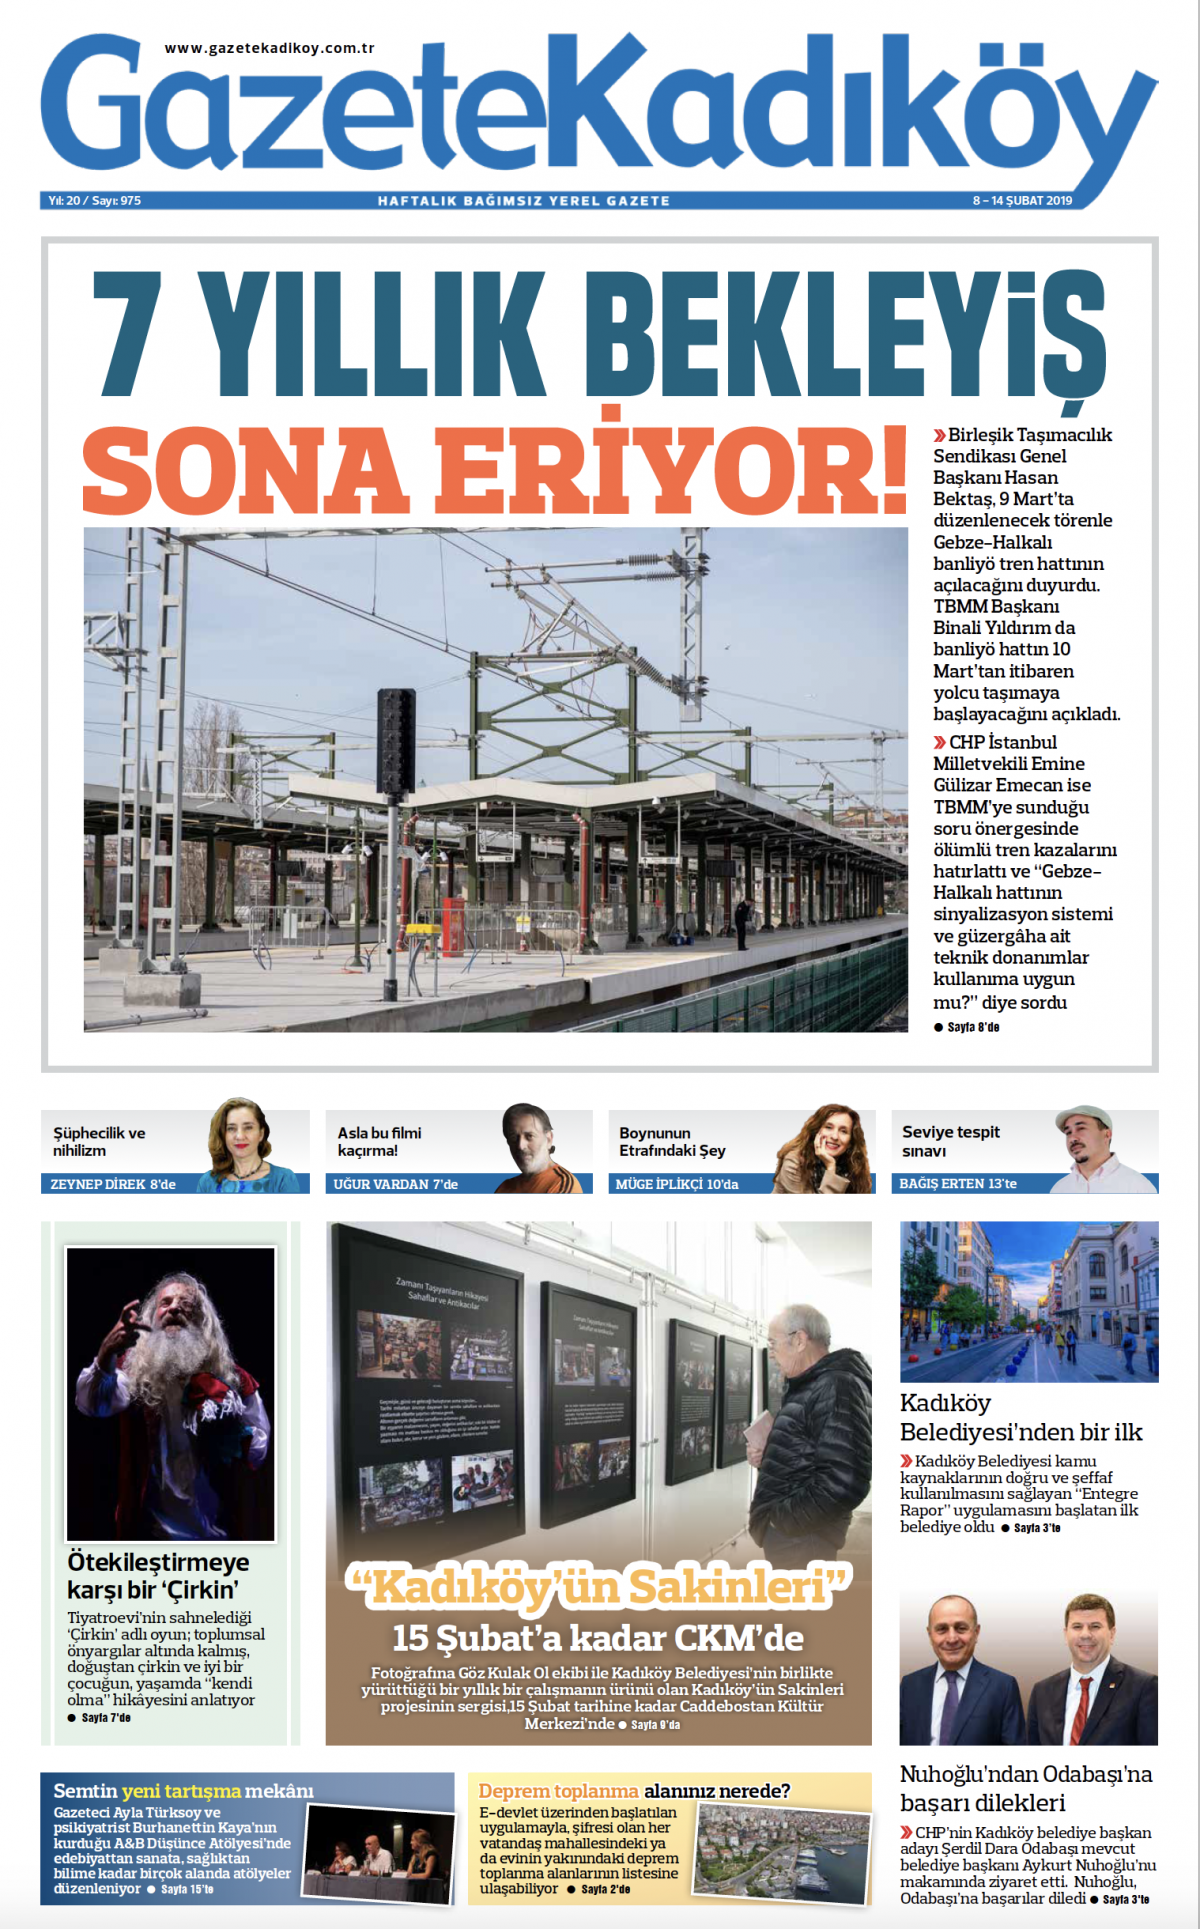 Gazete Kadıköy - 975. SAYI